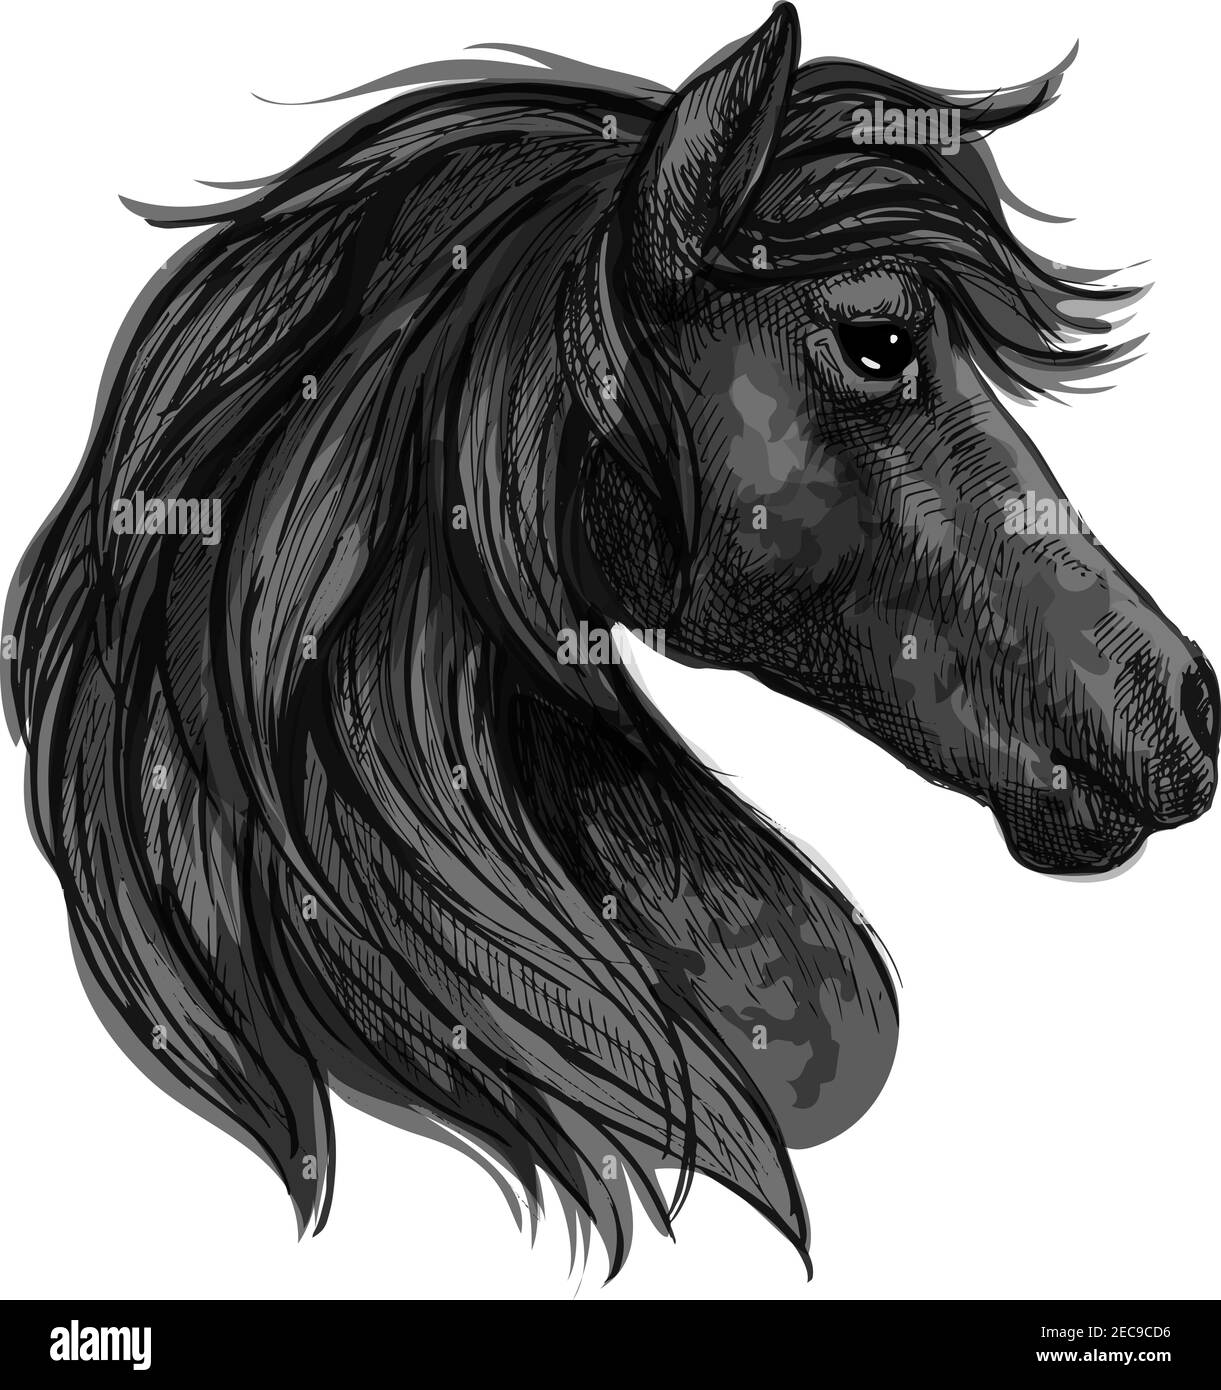 Portrait de la tête de cheval Raven. mustang noir avec de longues lamanes ondulées et des yeux pensifs réfléchis Illustration de Vecteur